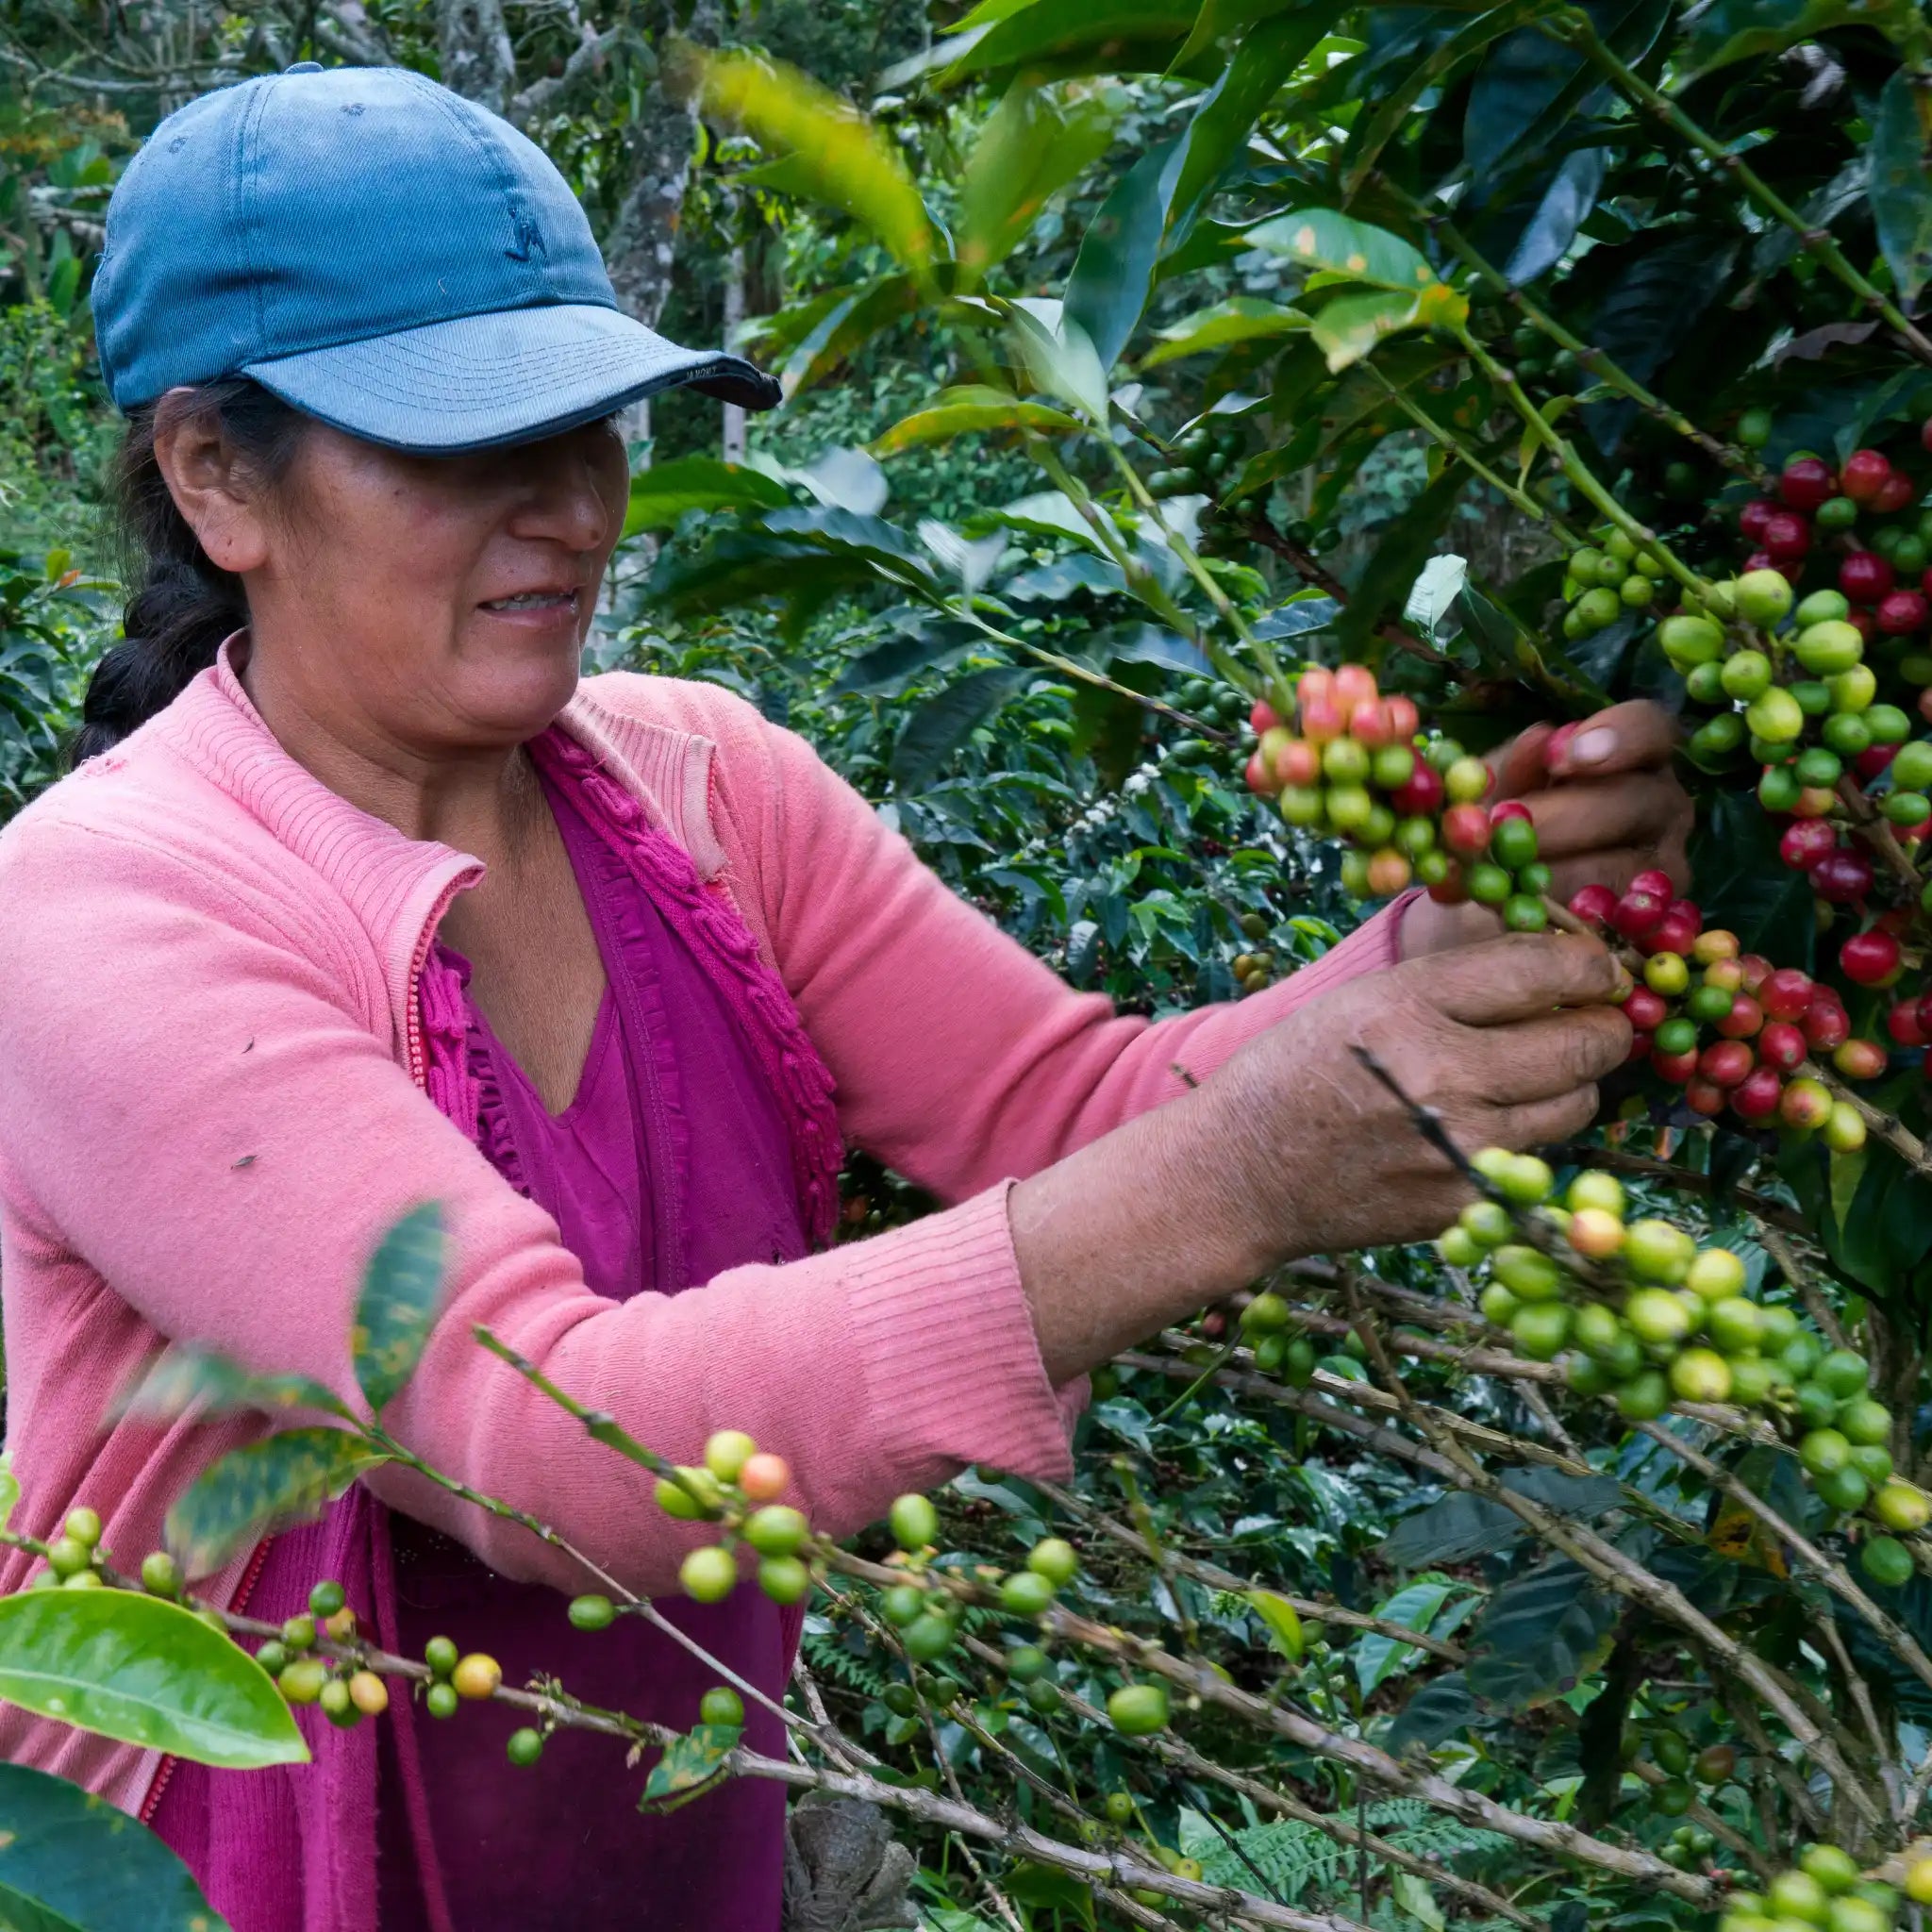 Eine peruanische Farmerin erntet reife Kaffeekirschen von Hand, die sich in Gesellschaft von grünen, unreifen Kaffeekirschen tummeln. Sie trägt eine blaue Cap und Kleidung in verschiedenen Rosa- und Pinktönen.